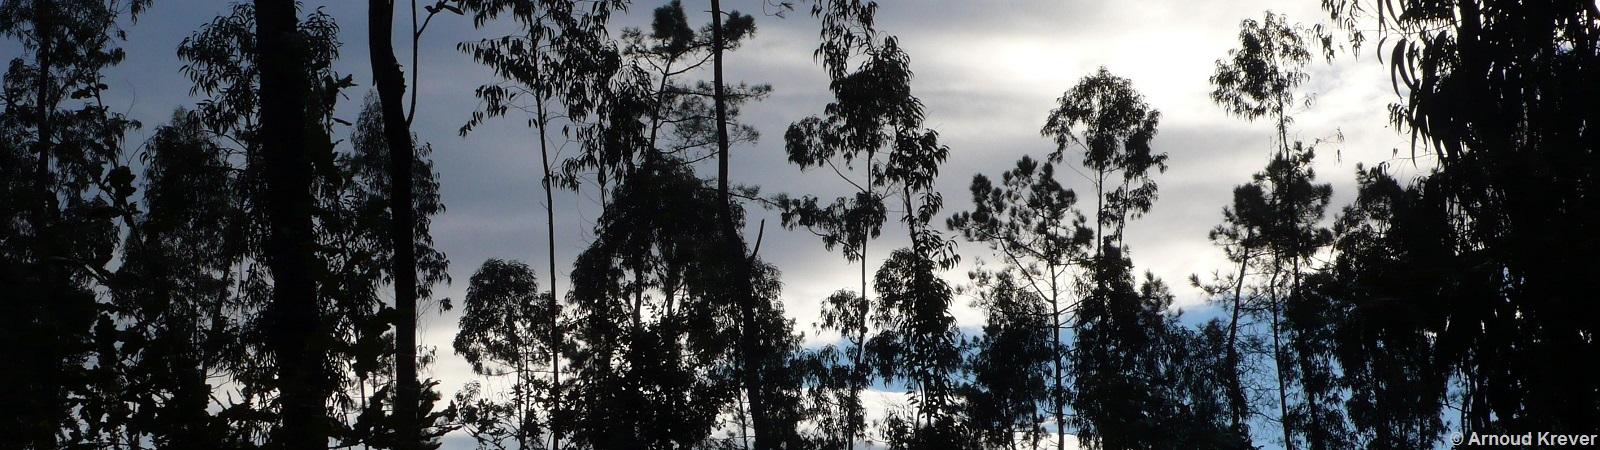 10Portugués1 462 Eucalyptusbomen